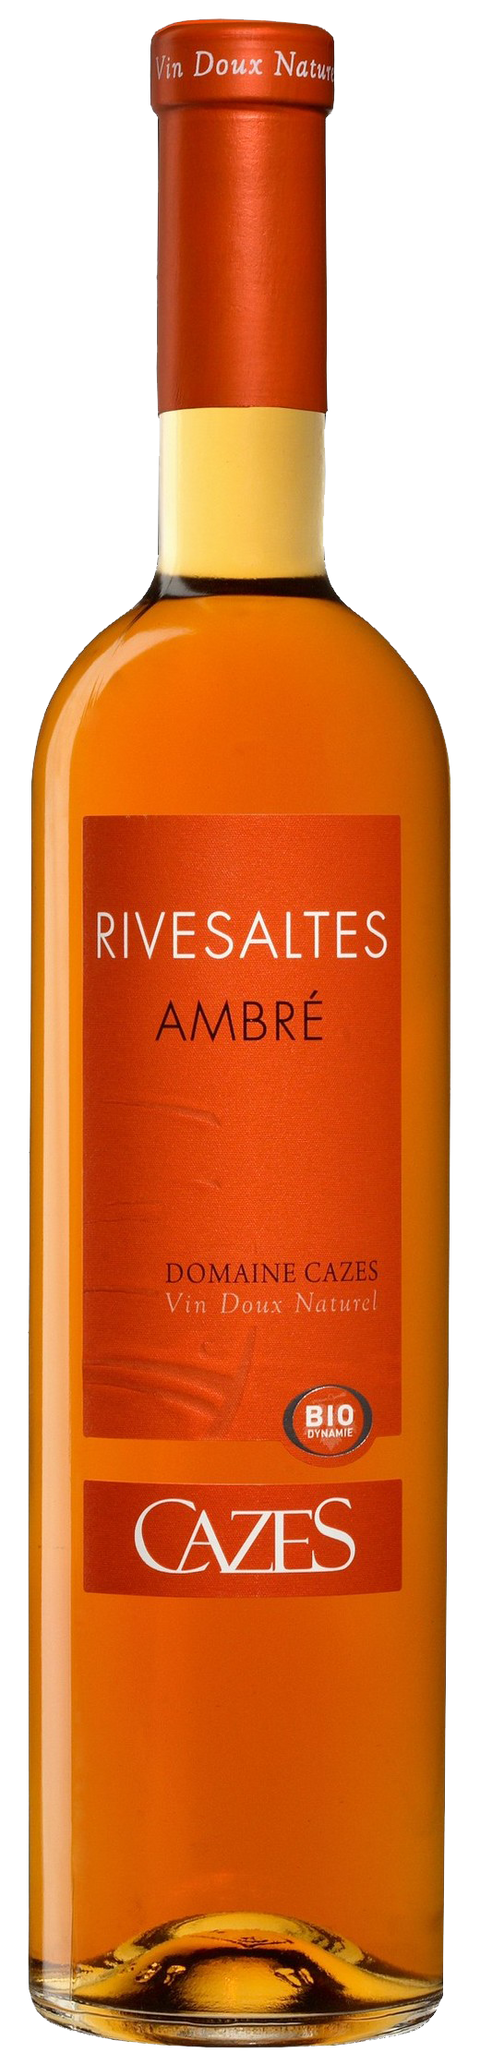 Rivesaltes Ambre---2013---Vins Doux Naturel---Cazes---0.375